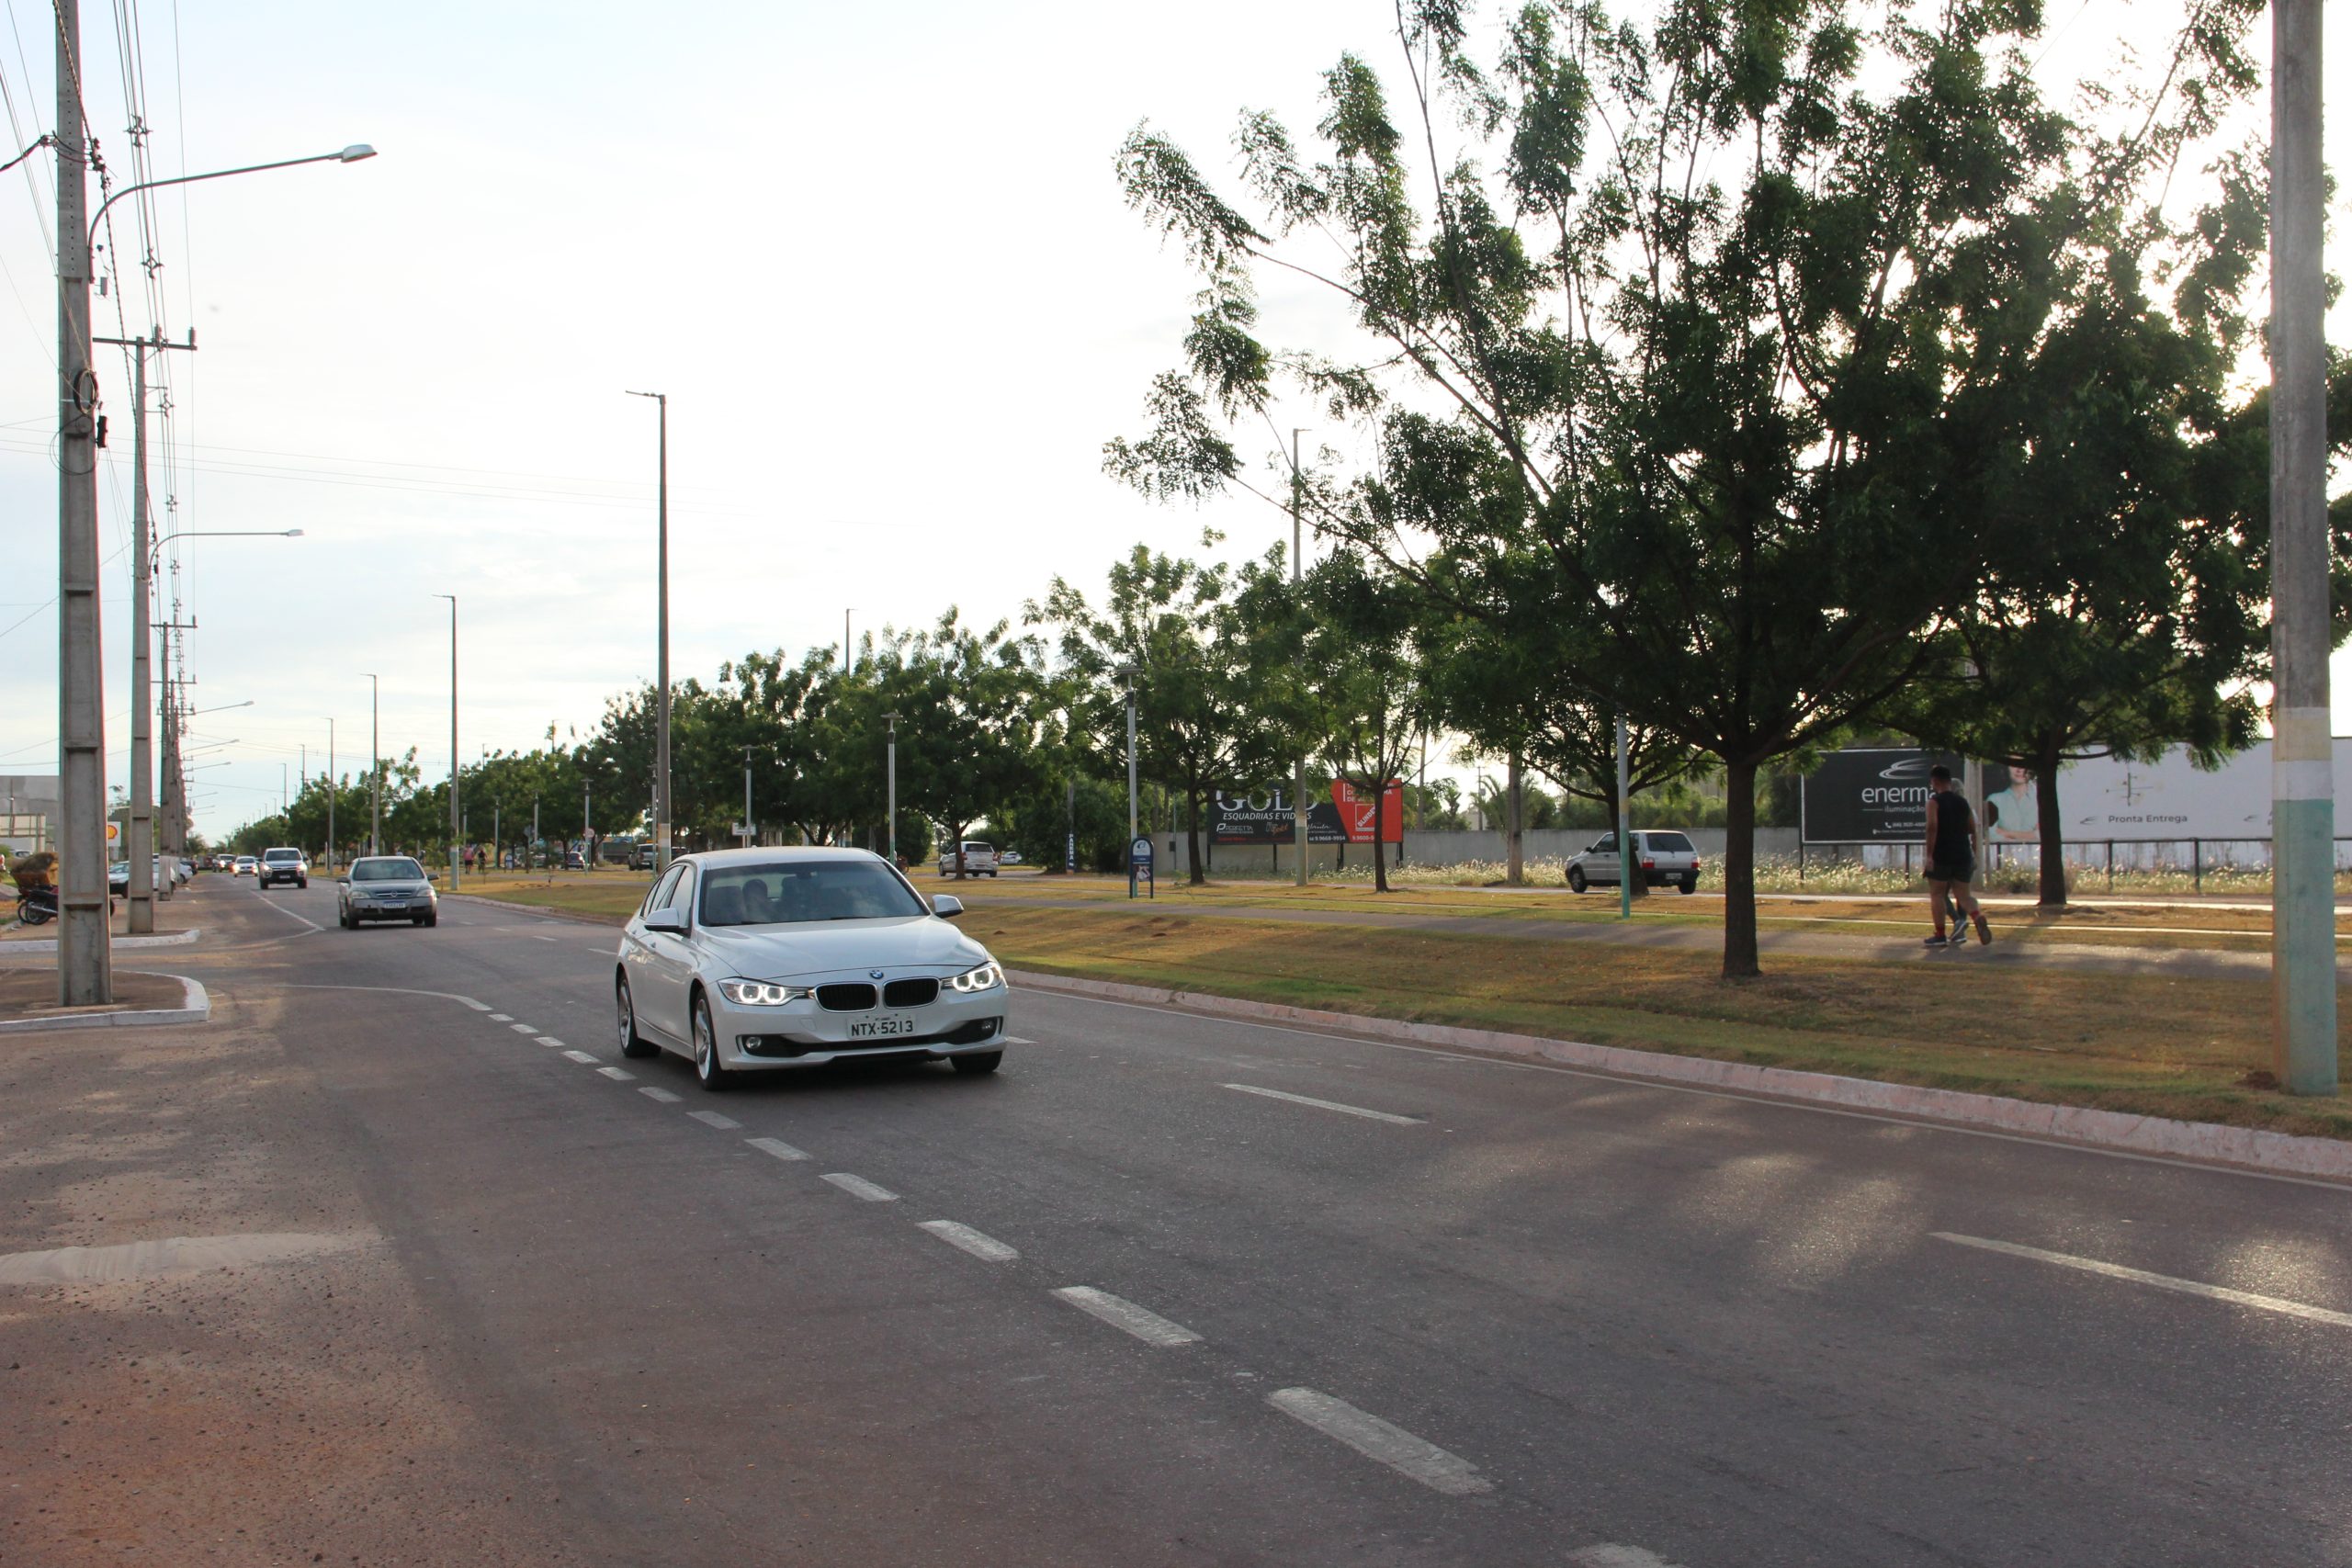 Avenida central de Sinop. Vias são asfaltadas e por elas cruzam veículos importados, embora seja uma cidade agrícola